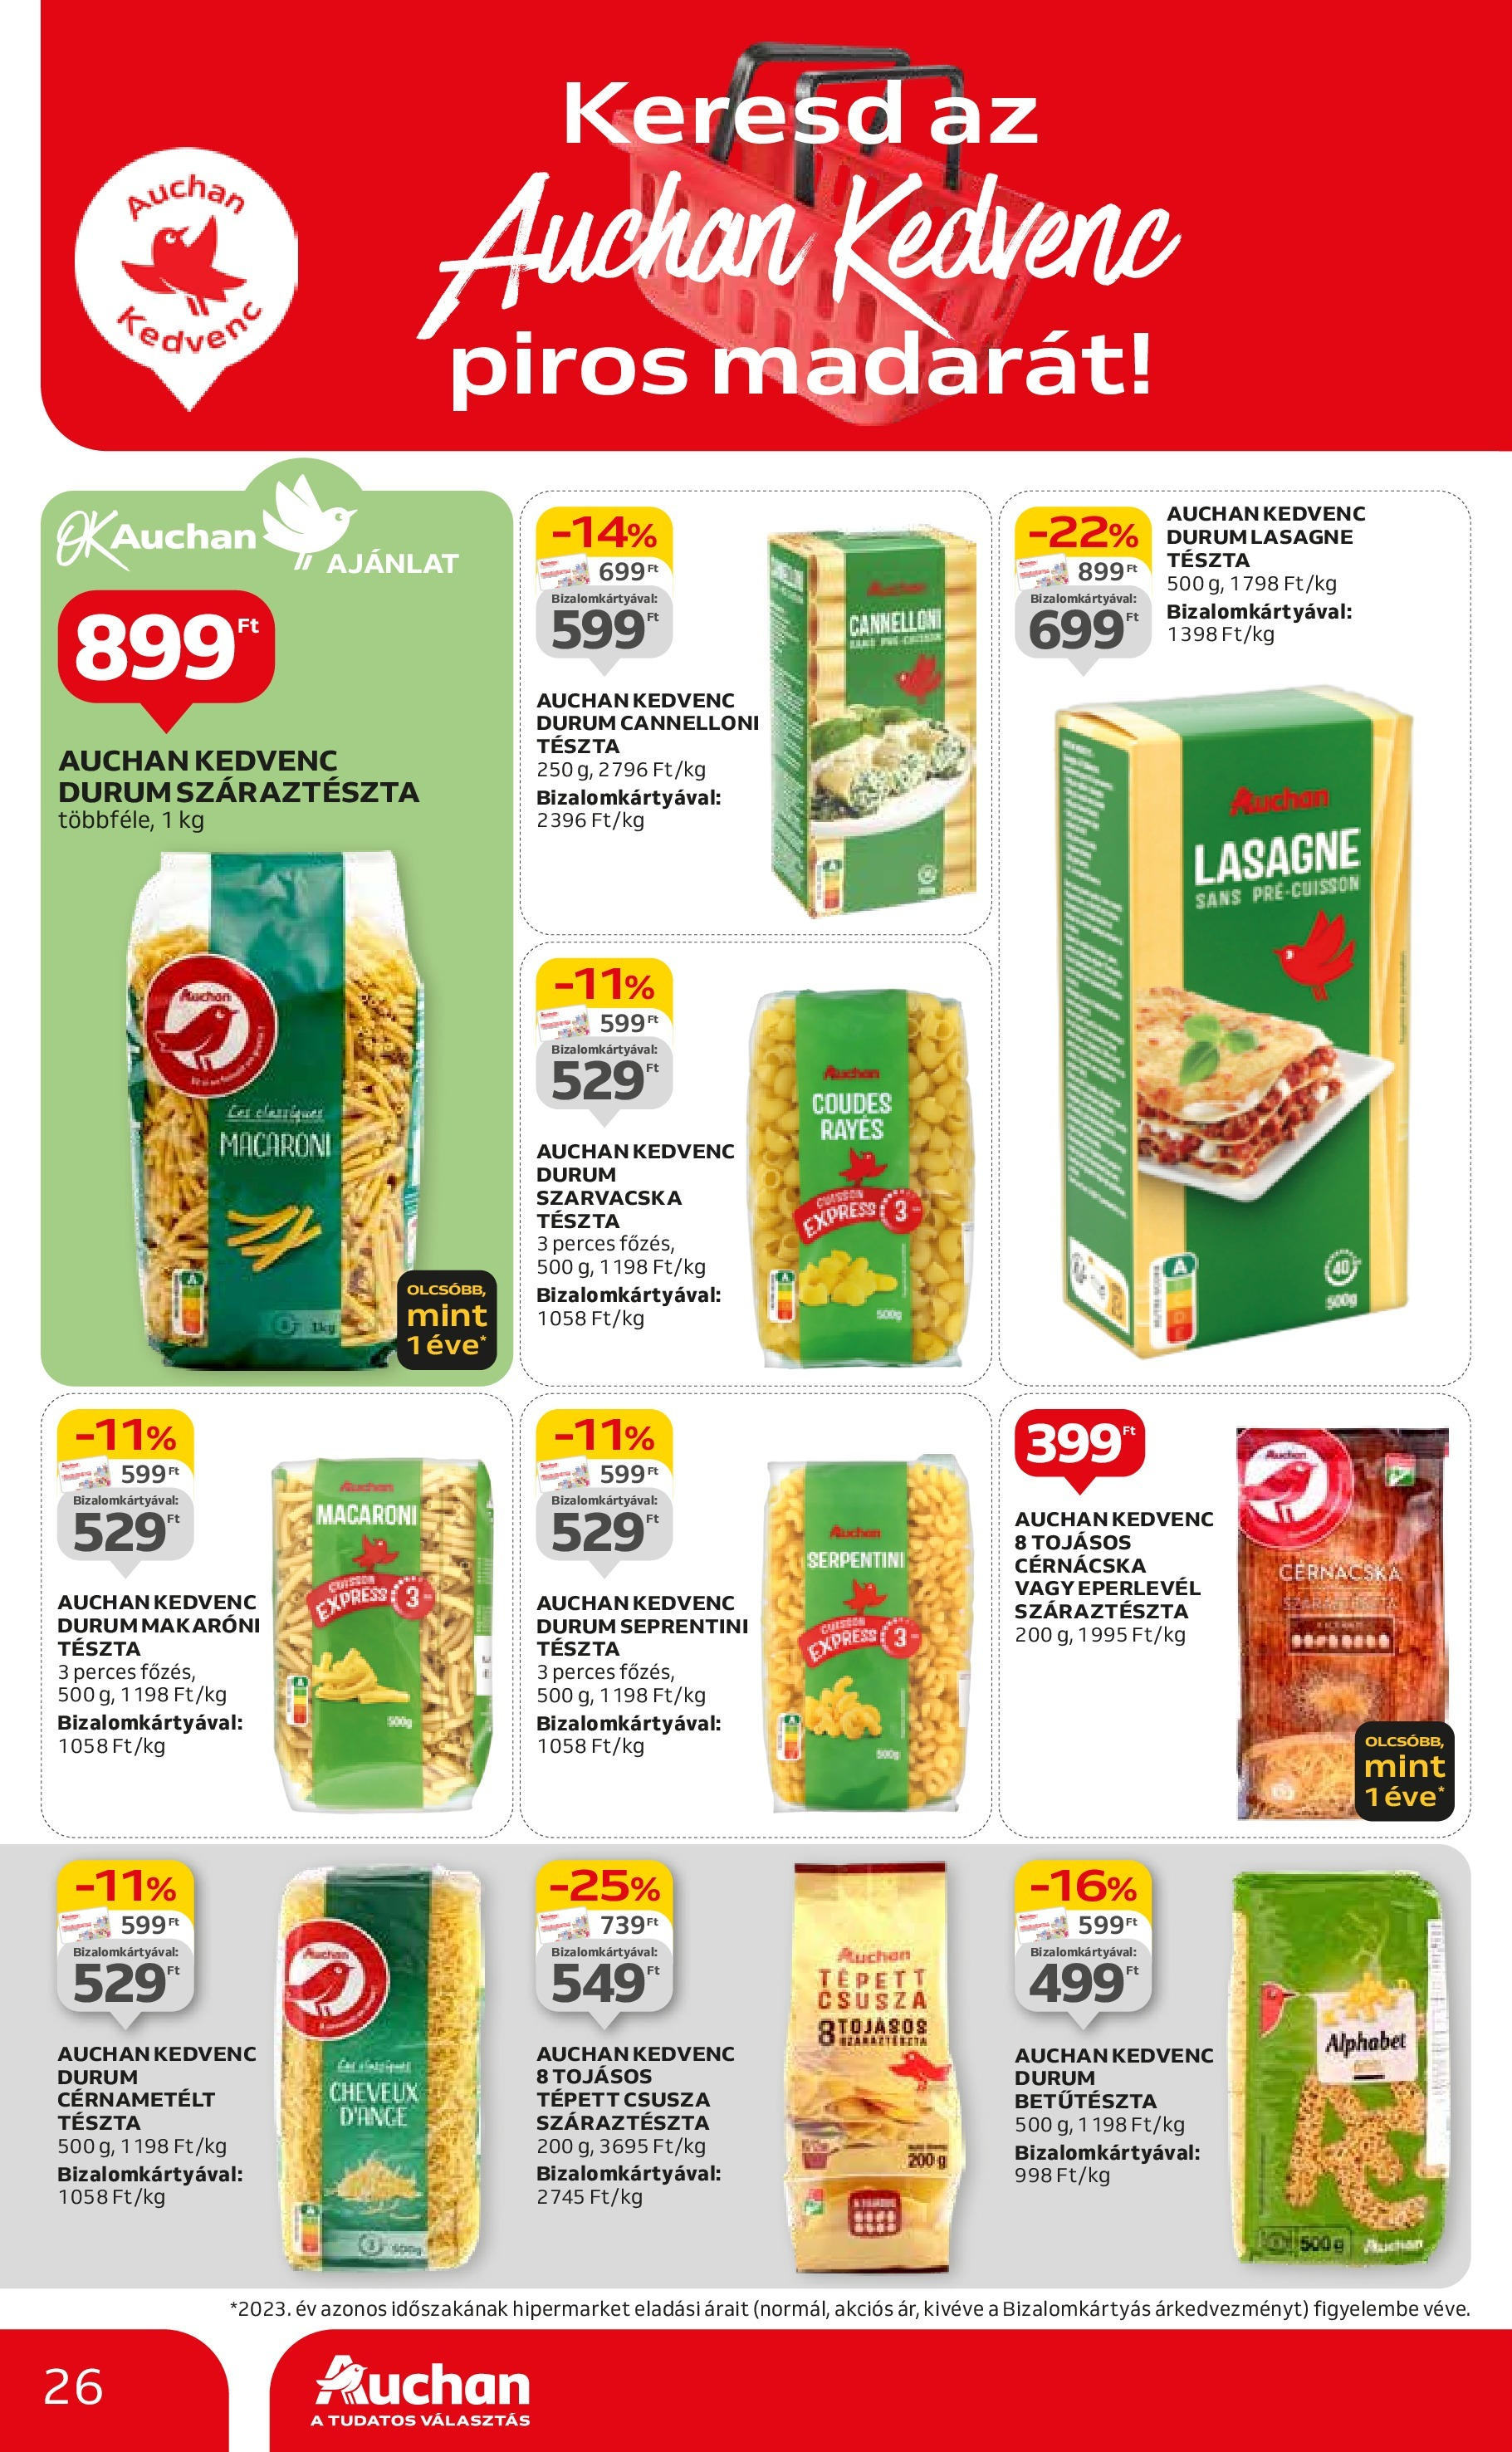 Auchan  Akciós újság - 2024.04.25. -tól/töl > akció, szórólap 🛍️ | Oldal: 26 | Termékek: Cannelloni, Tészta, Lasagne, Cérnametélt